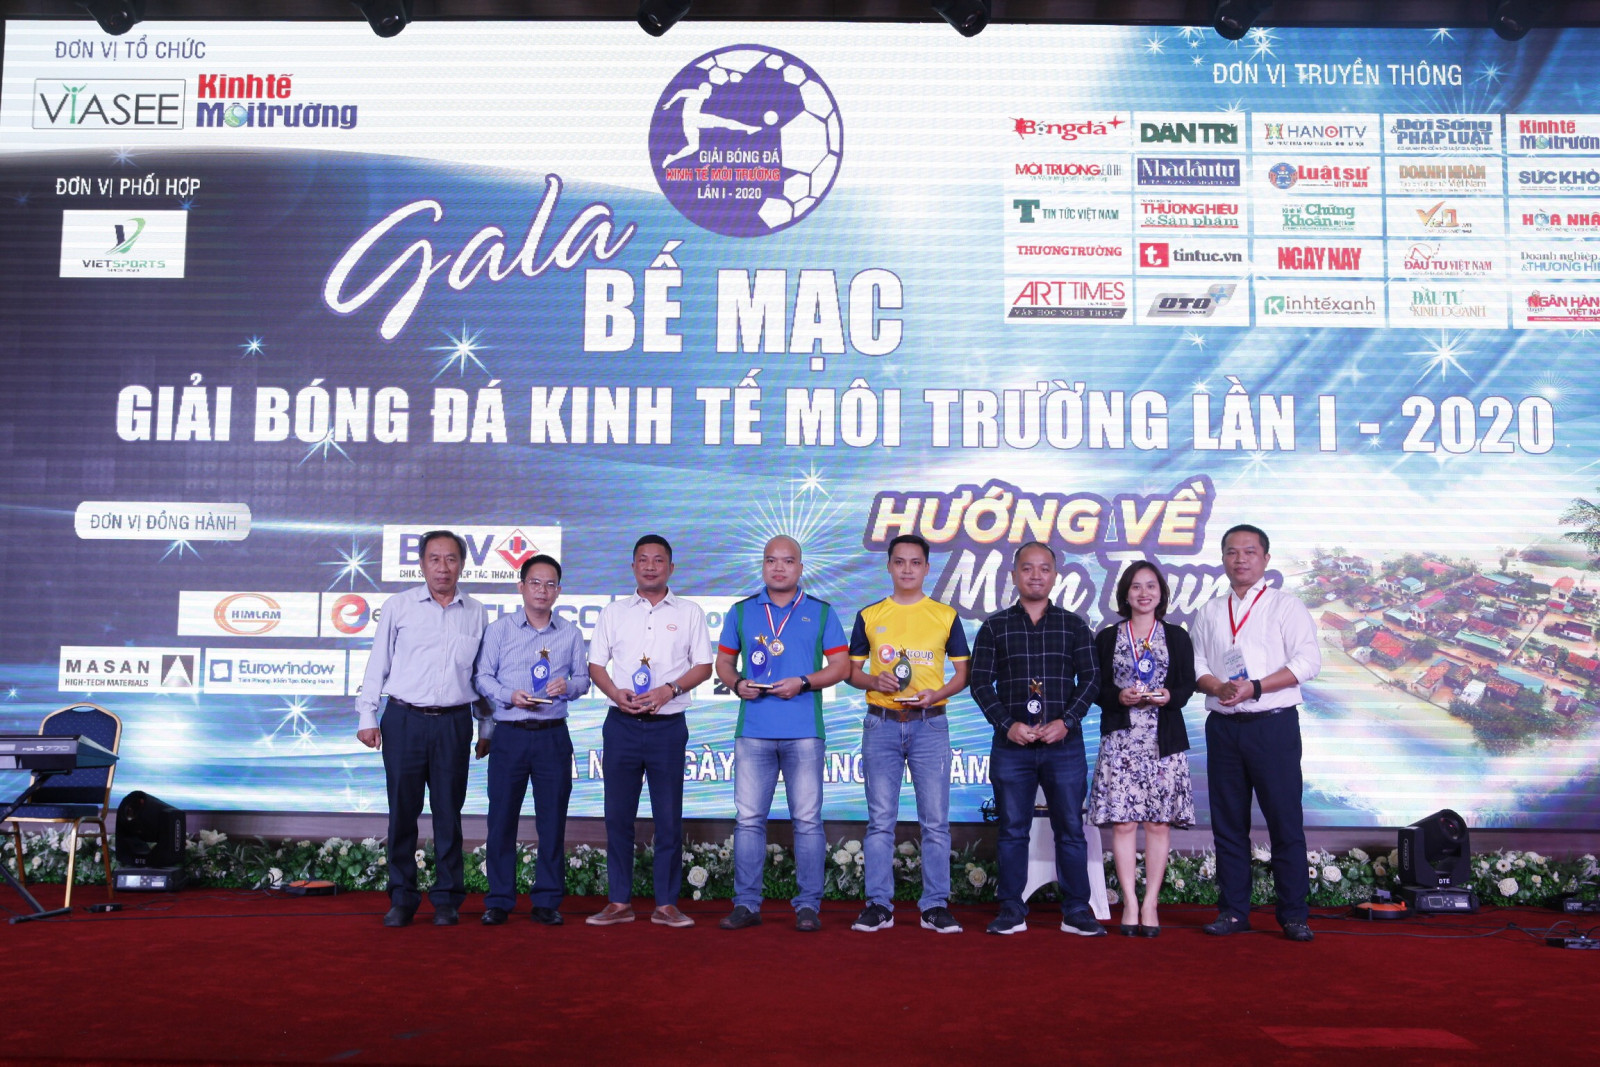 Gala Giải bóng đá Kinh tế Môi trường lần thứ I-2020: Ủng hộ 265 triệu đồng cho đồng bào miền Trung - Ảnh 1.